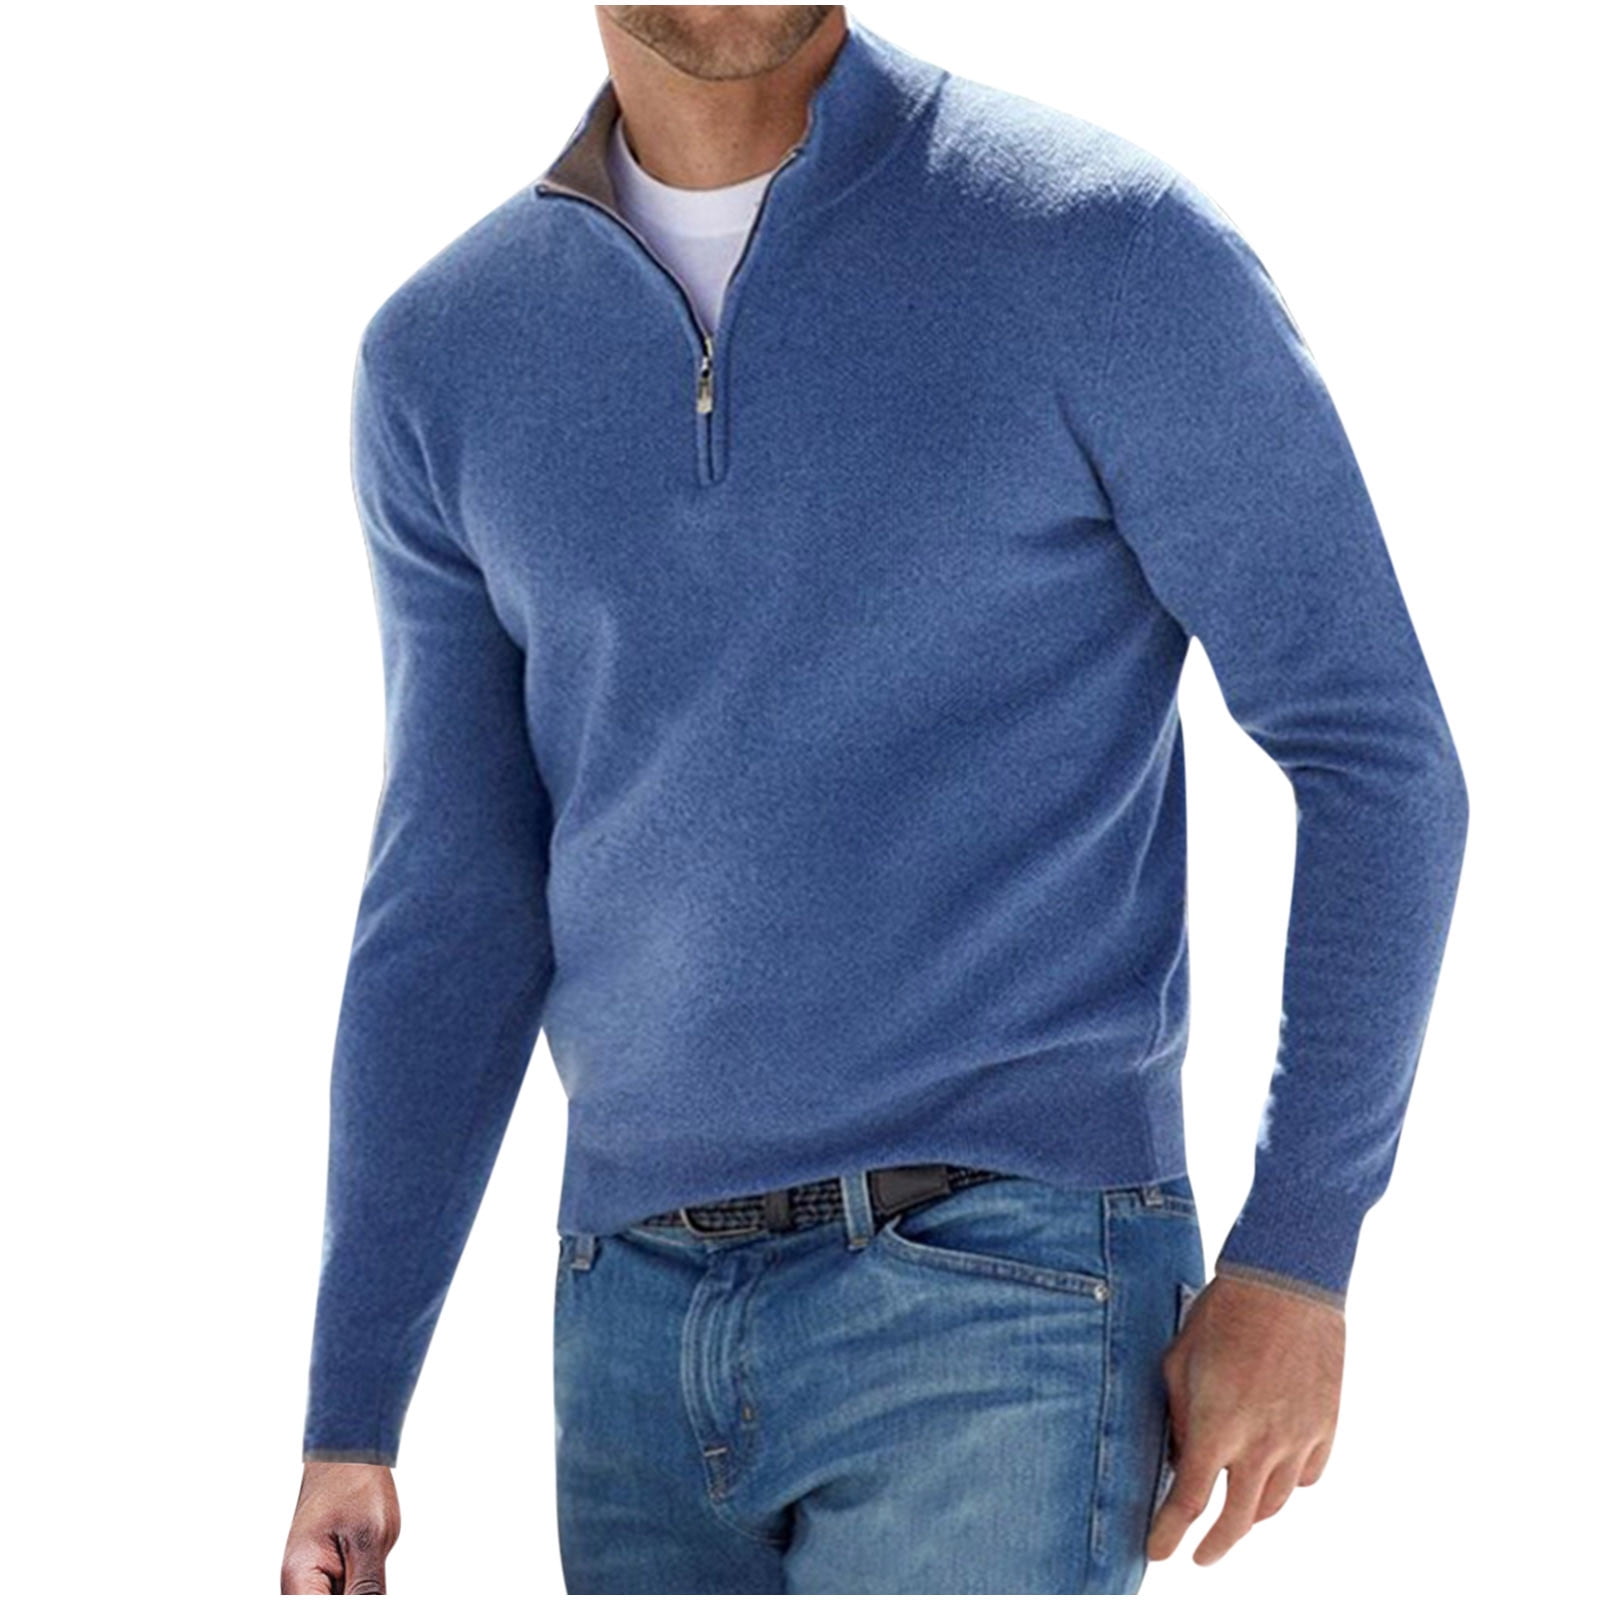  Mens Quarter Zip Sweatshirt Casual Long Sleeve Fleece